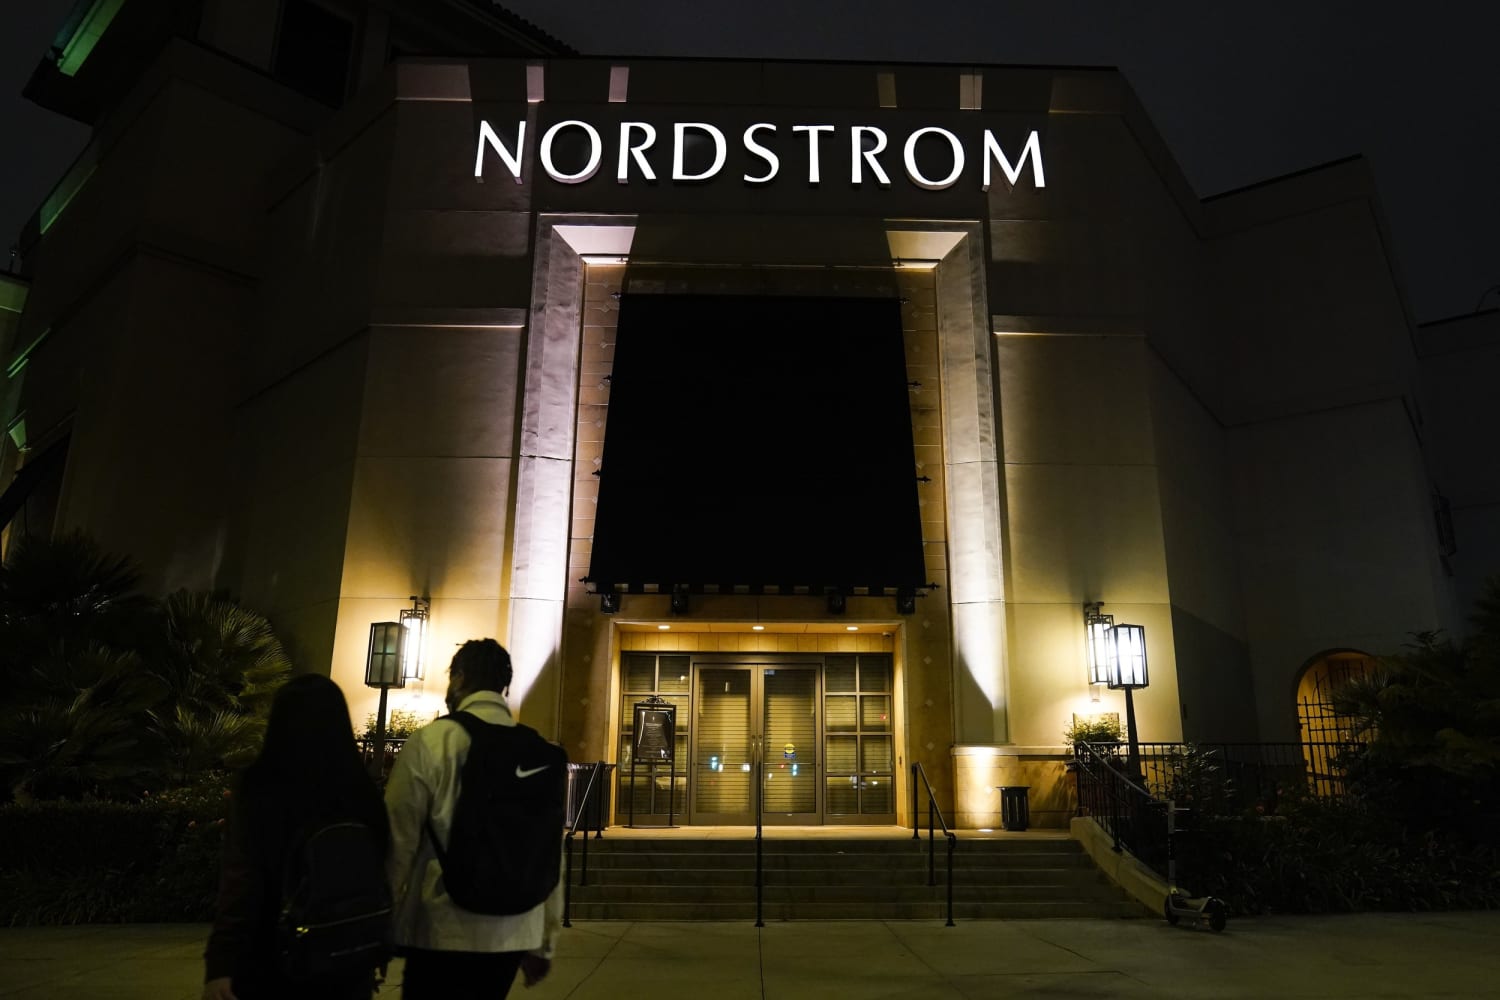 Bruce Nordstrom, die meehielp aan de ontwikkeling van de warenhuisketen in familiebezit, is op 90-jarige leeftijd overleden